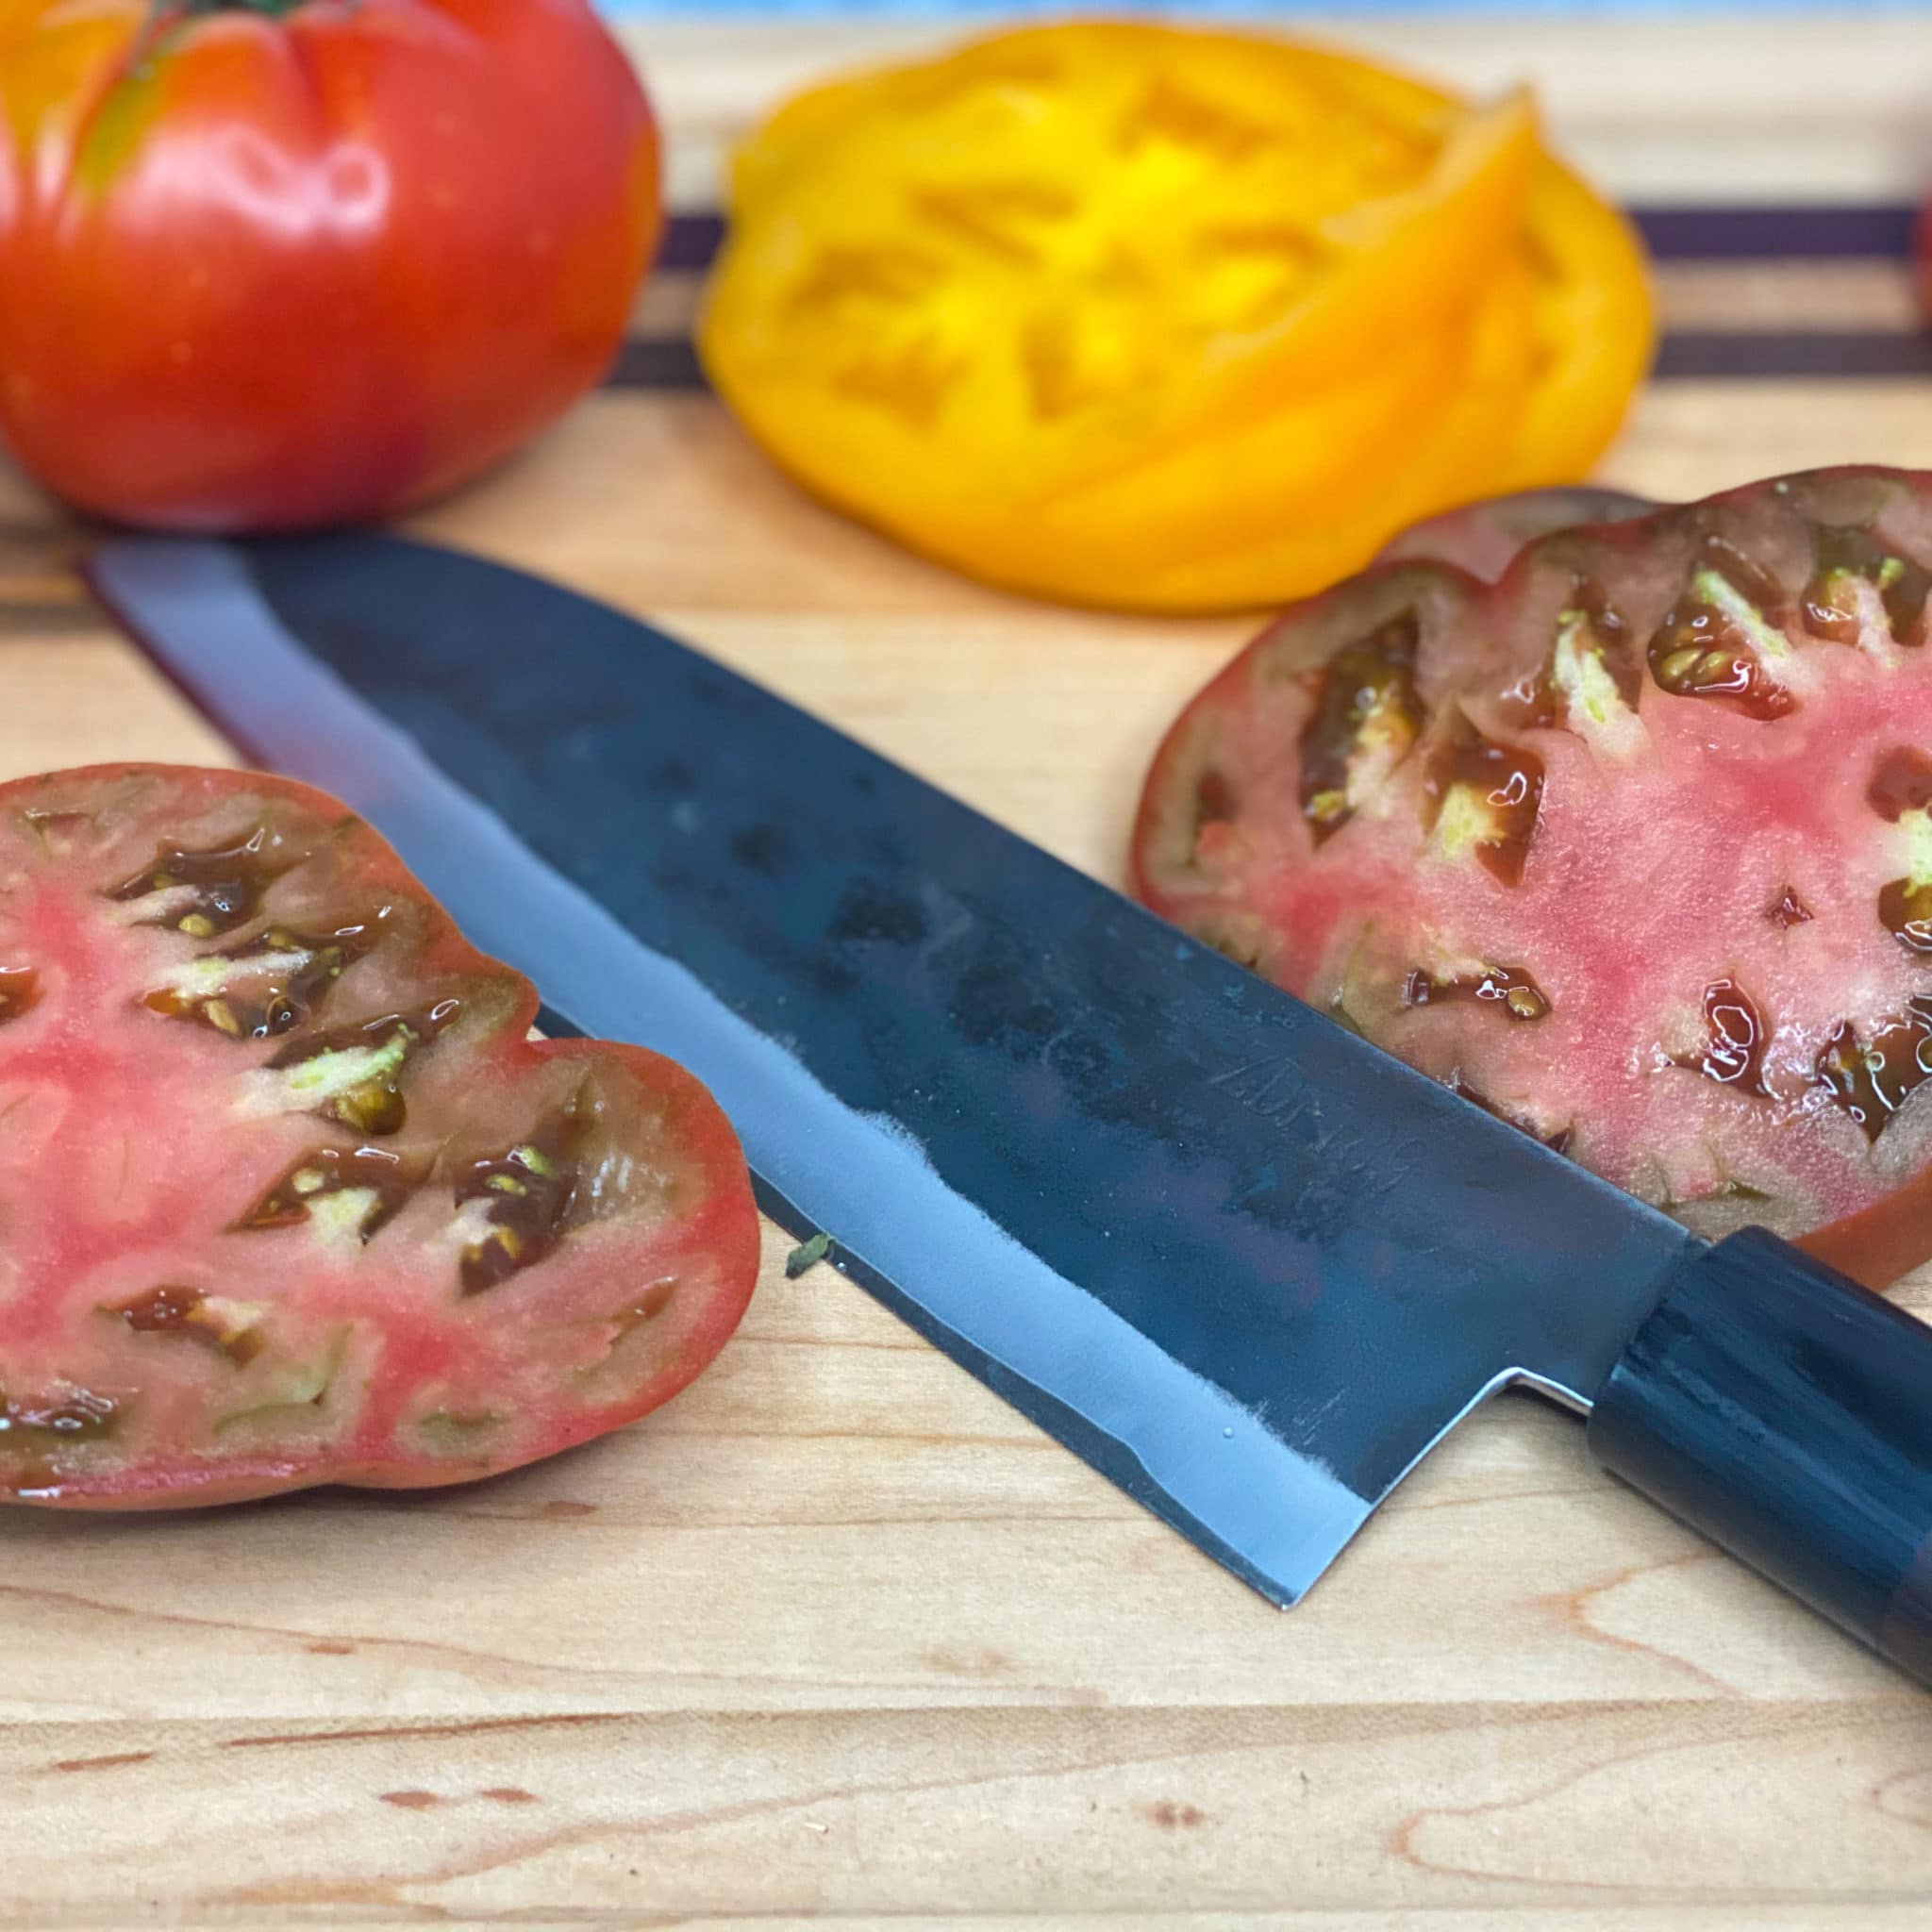 fresh sliced tomatoes